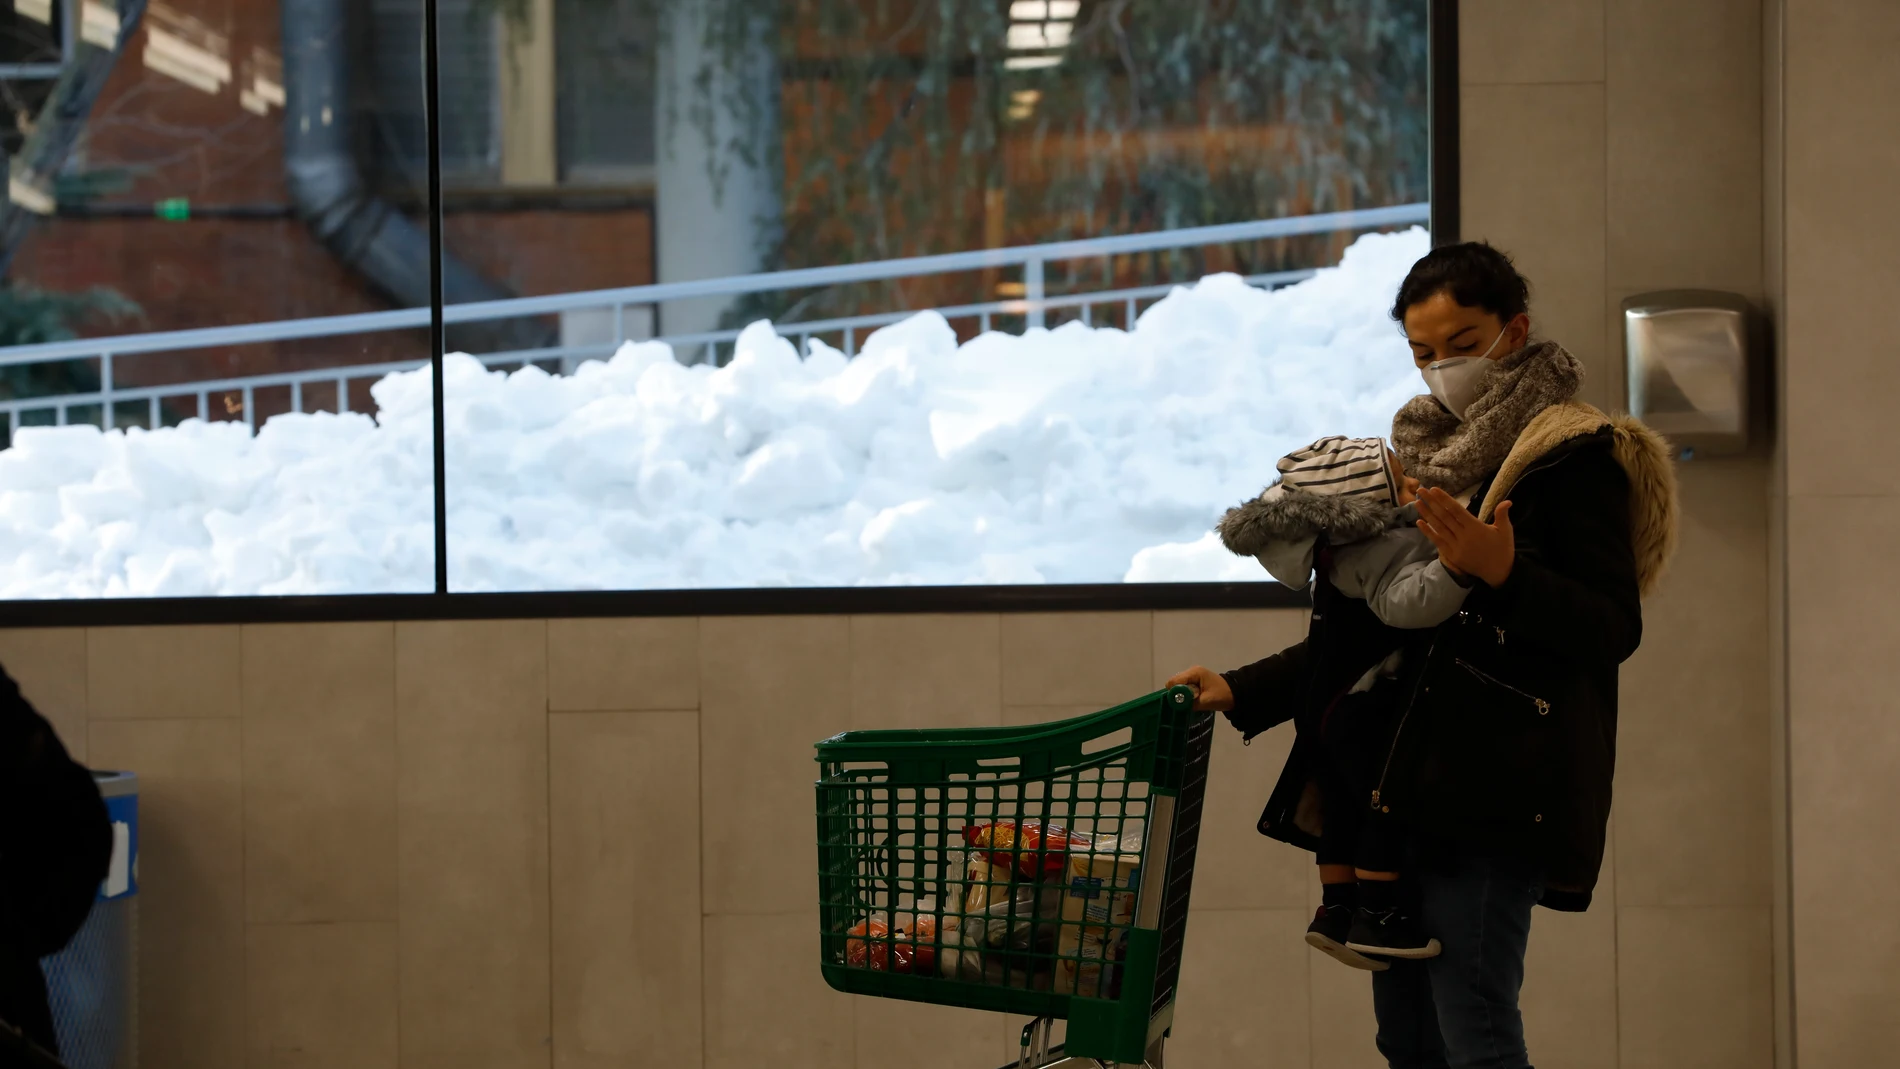 Madrileños reponiendo en los supermercados después de la nevada por la borrasca filomena